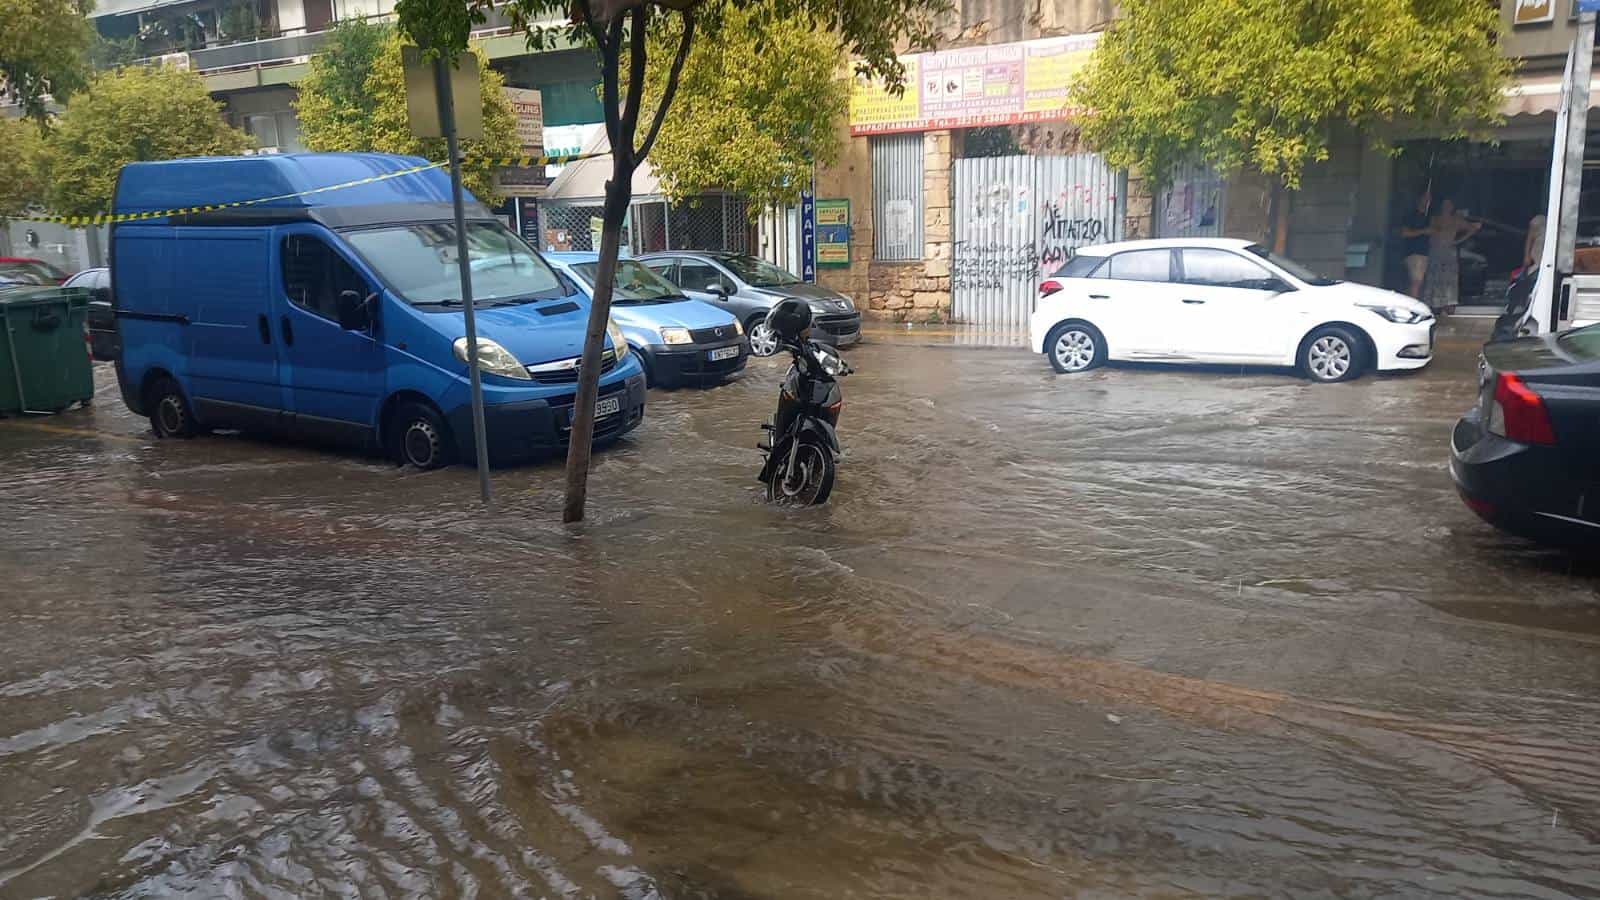 Χανιά: Πλημμύρισαν δρόμοι μέσα στην πόλη - Η έντονη βροχή μετέτρεψε σε ποτάμια κεντρικούς δρόμους (φωτο)